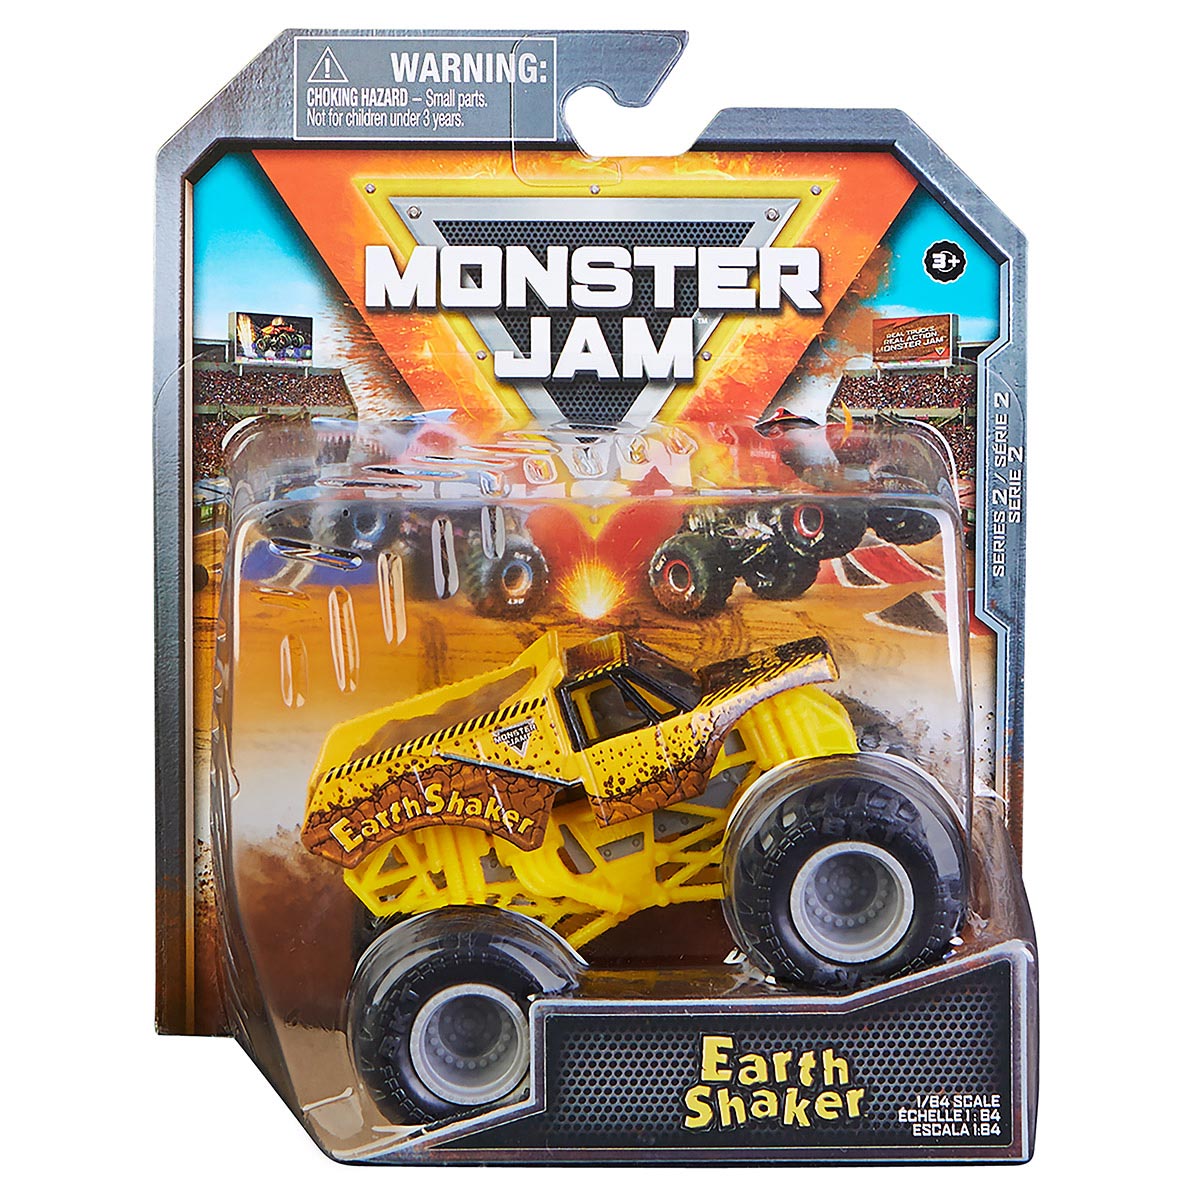 Carrinho Monster Jam - Escala 1:64 - Earth Shaker Legacy